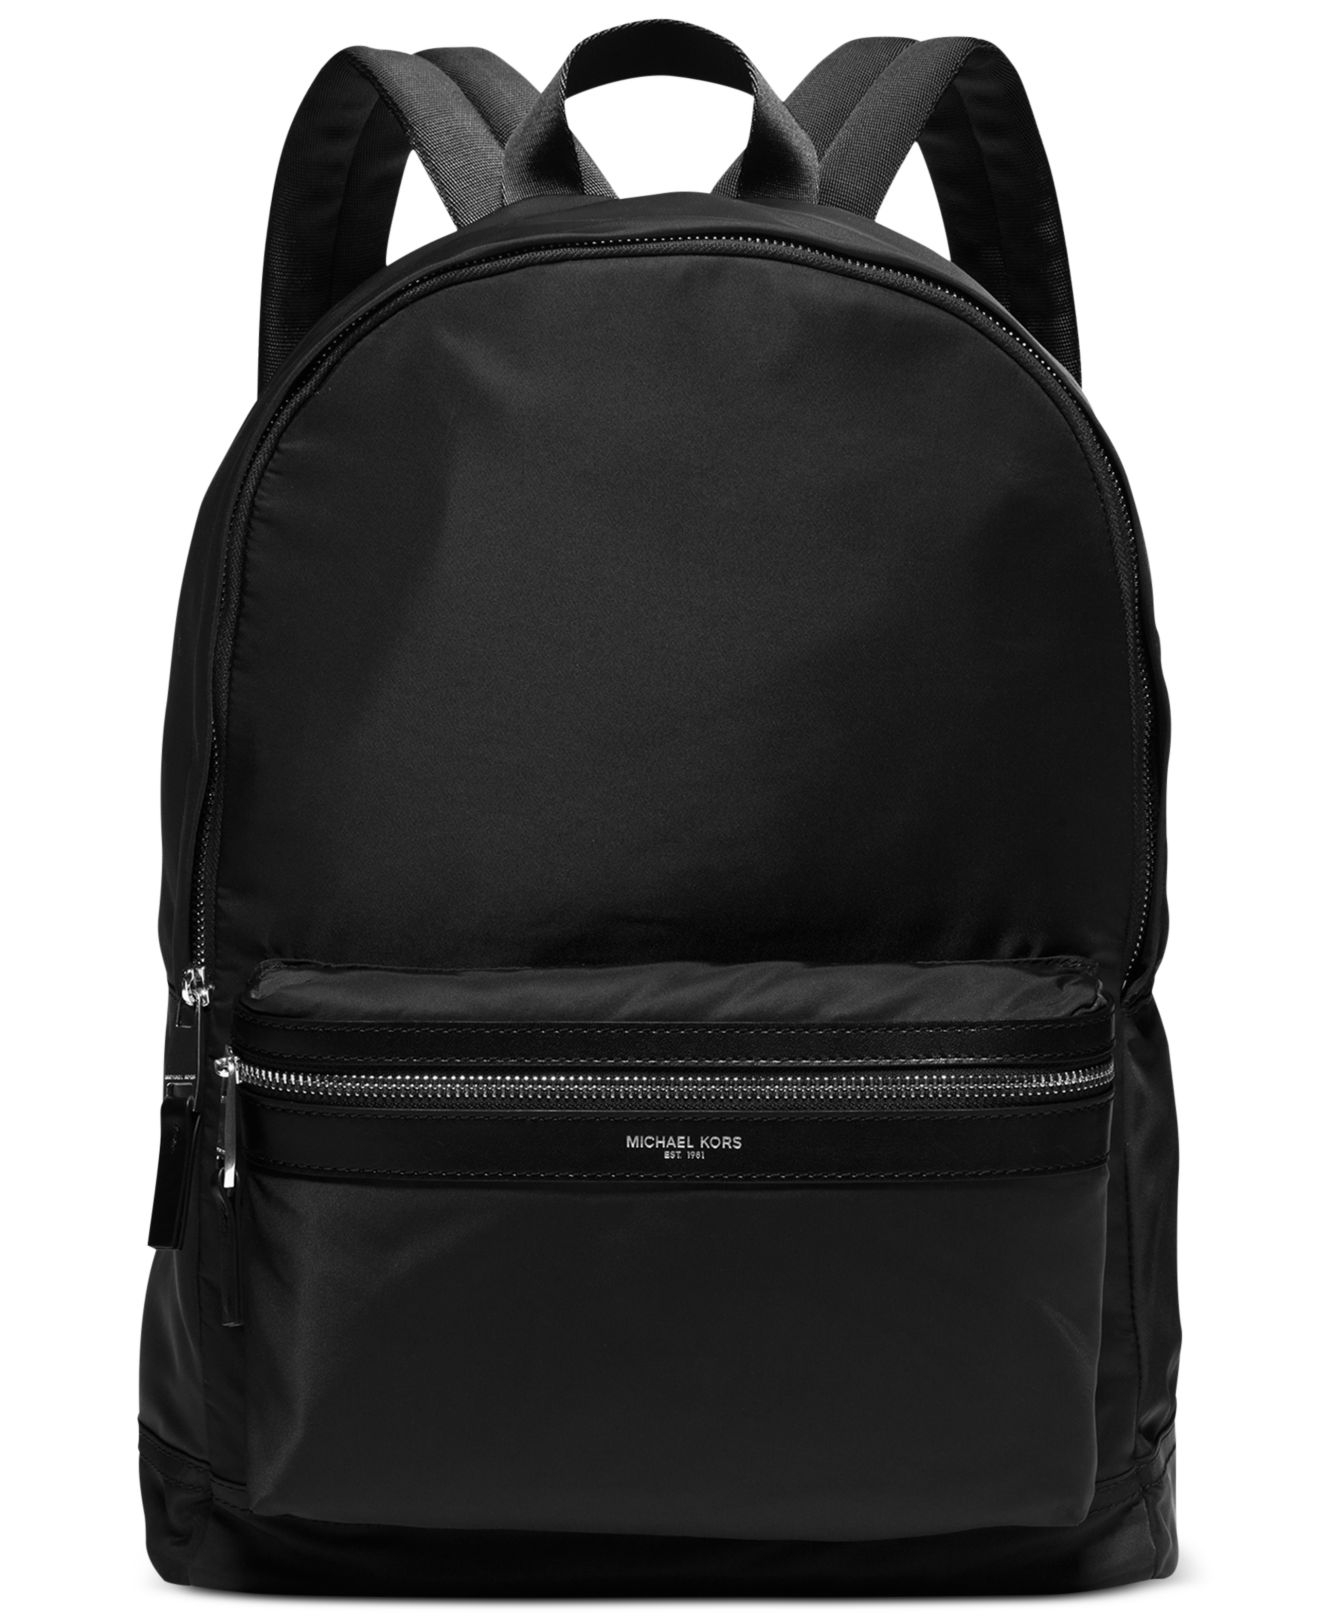 Backpack Nylon Black 45